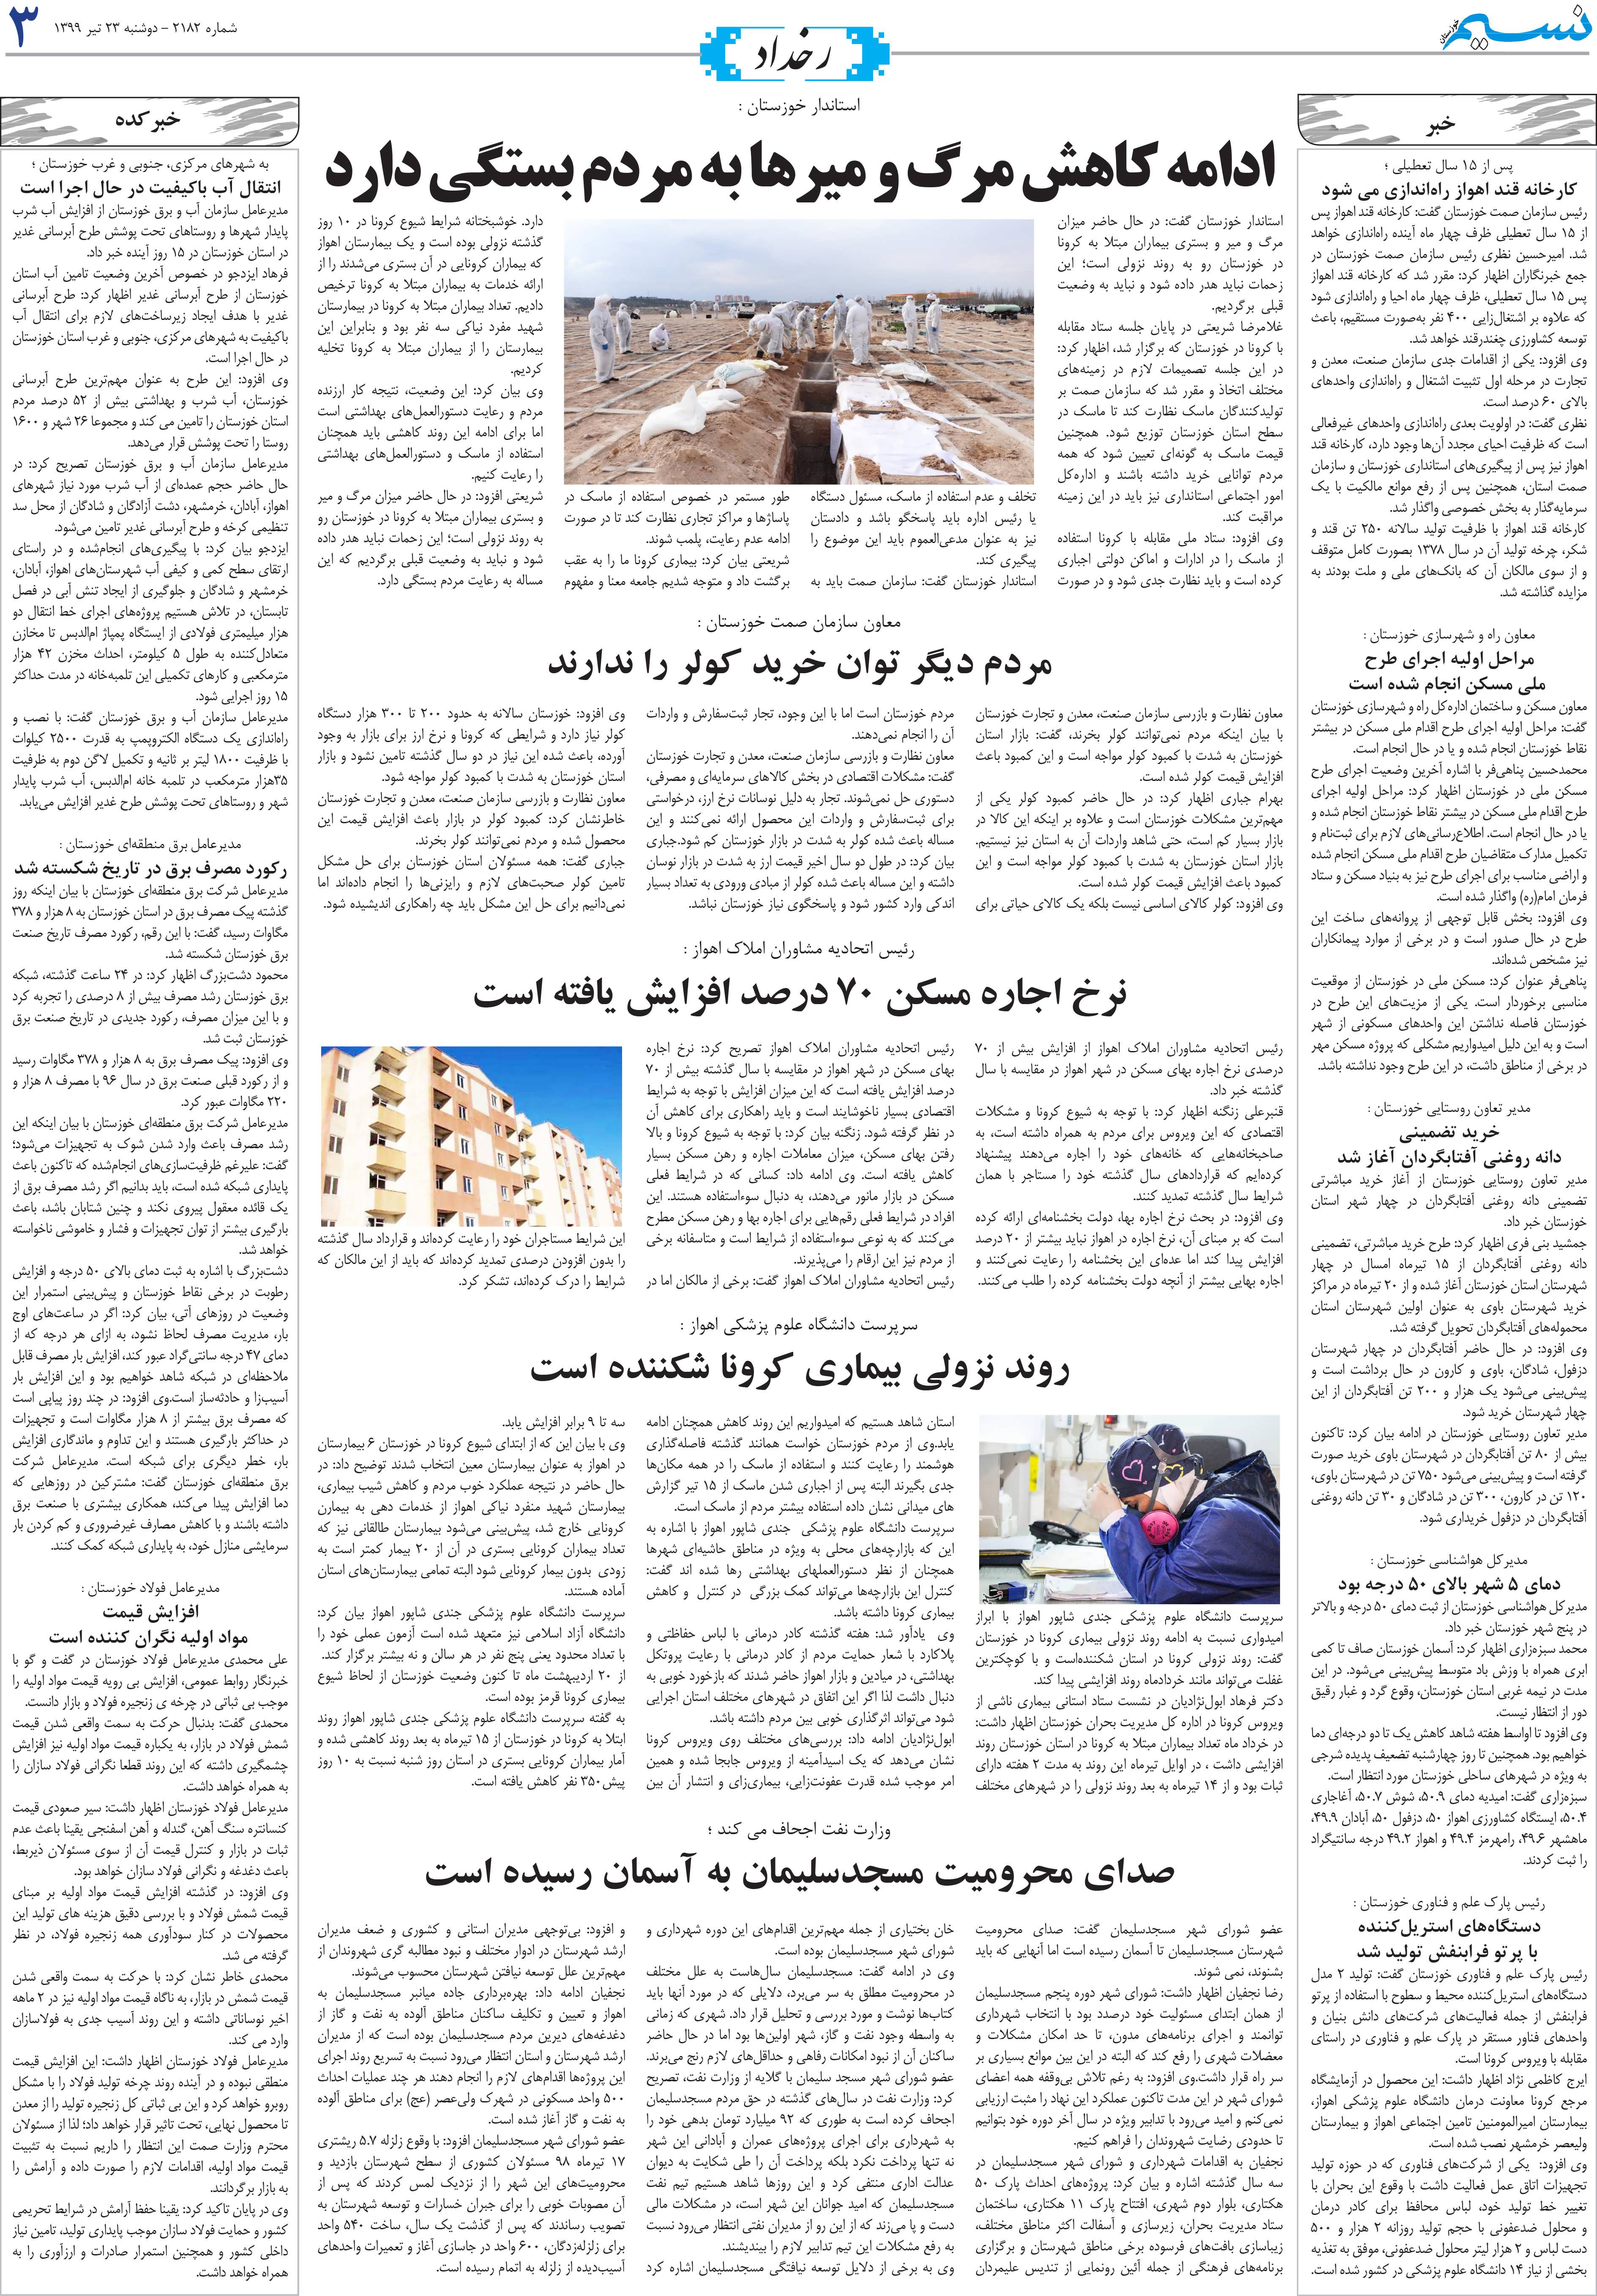 صفحه رخداد روزنامه نسیم شماره 2182